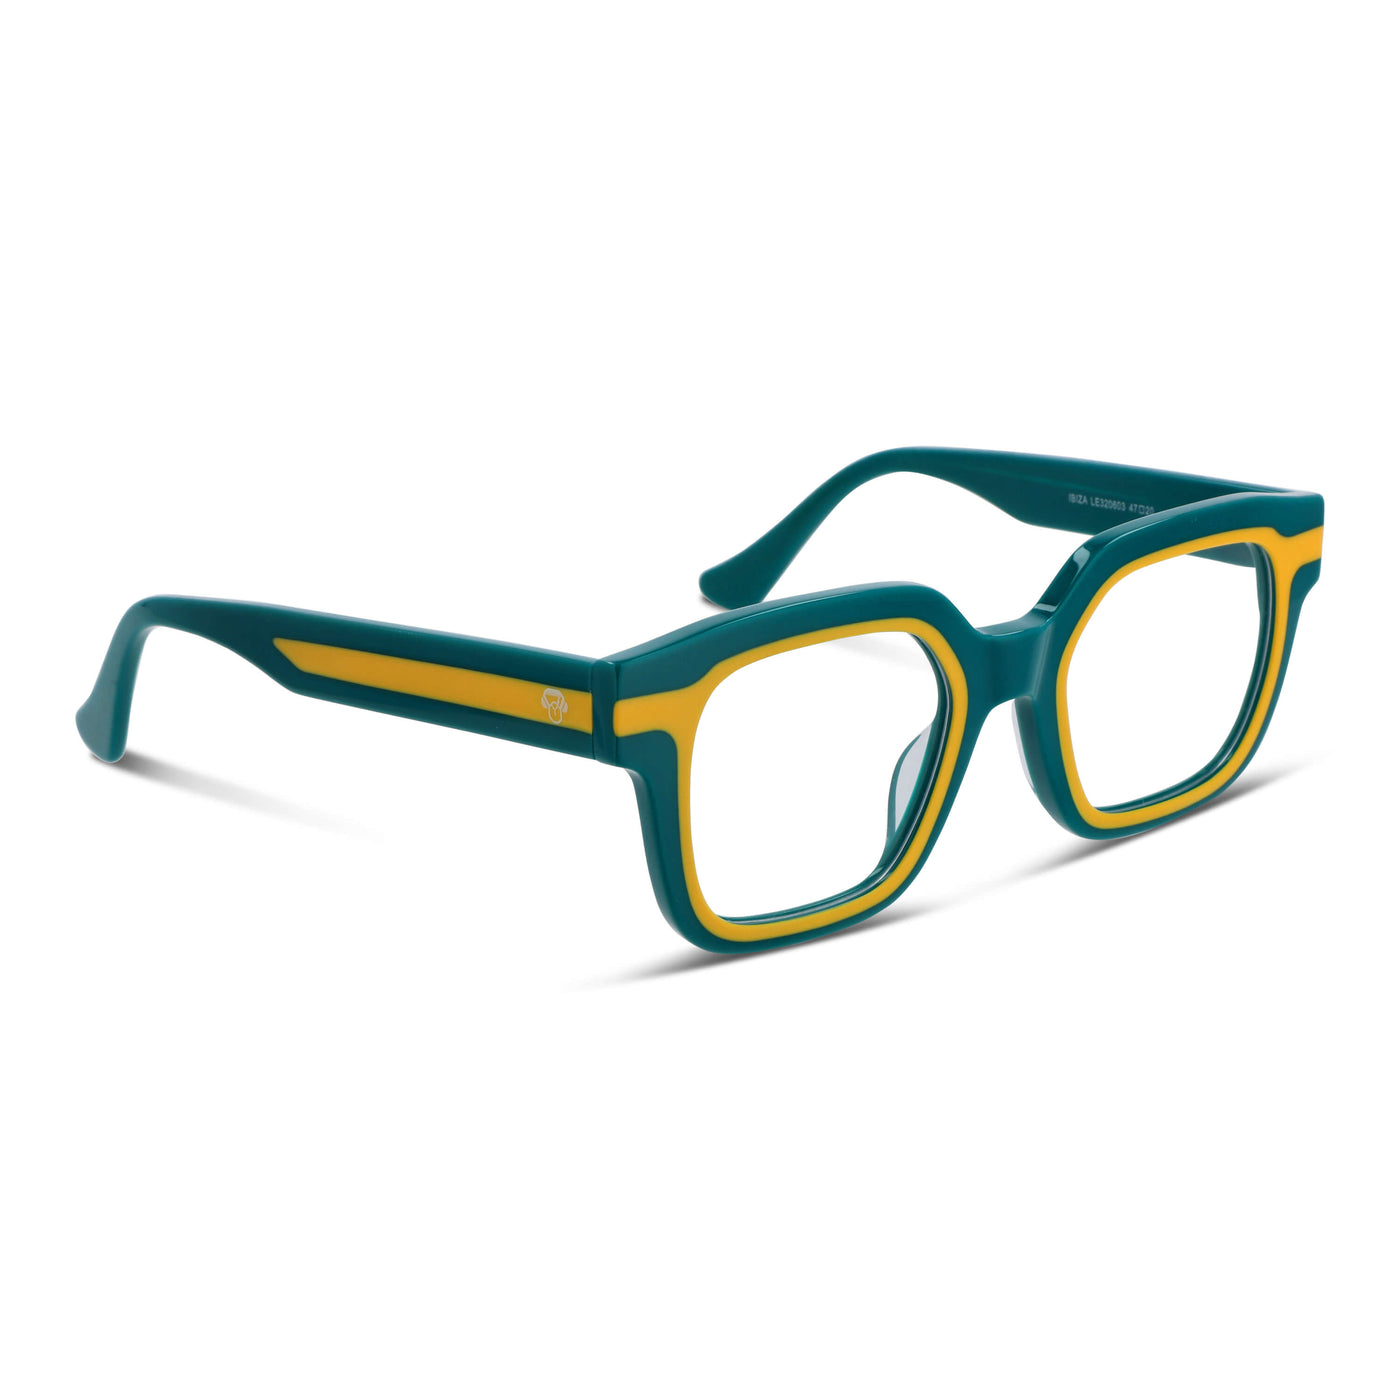  lentes diseñador exclusivo moda verde cuadrado hombre mujer receta opticos distribuidor mayorista opticas.jpg